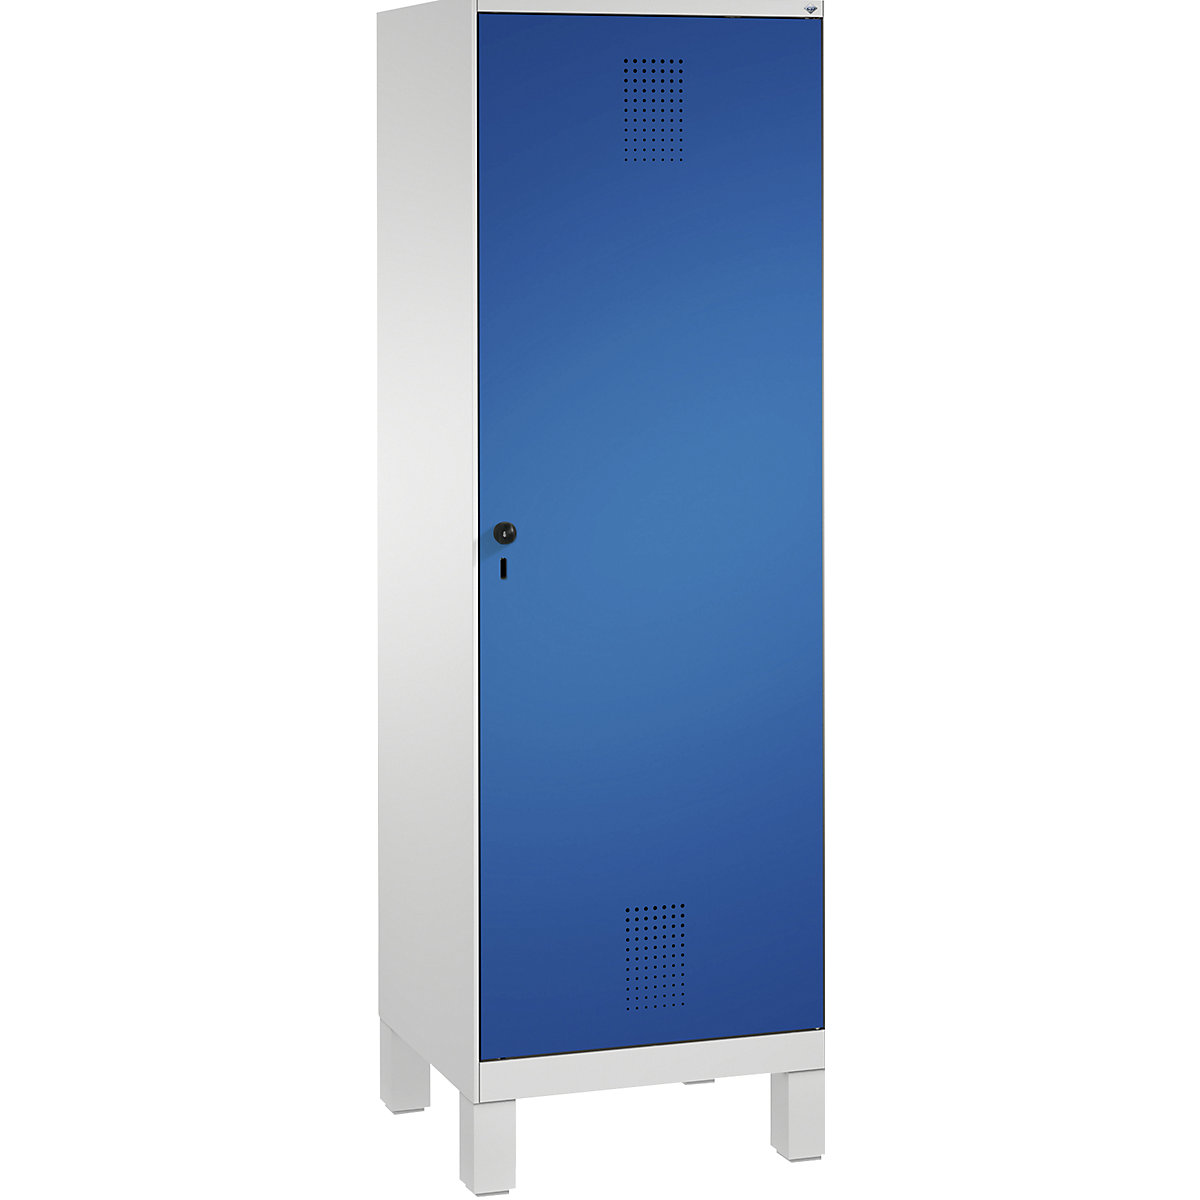 Šatní skříň s nohami EVOLO s dveřmi přes 2 oddíly – C+P, 2 oddíly, 1 dveře, šířka oddílu 300 mm, světlá šedá / enciánová modrá-9